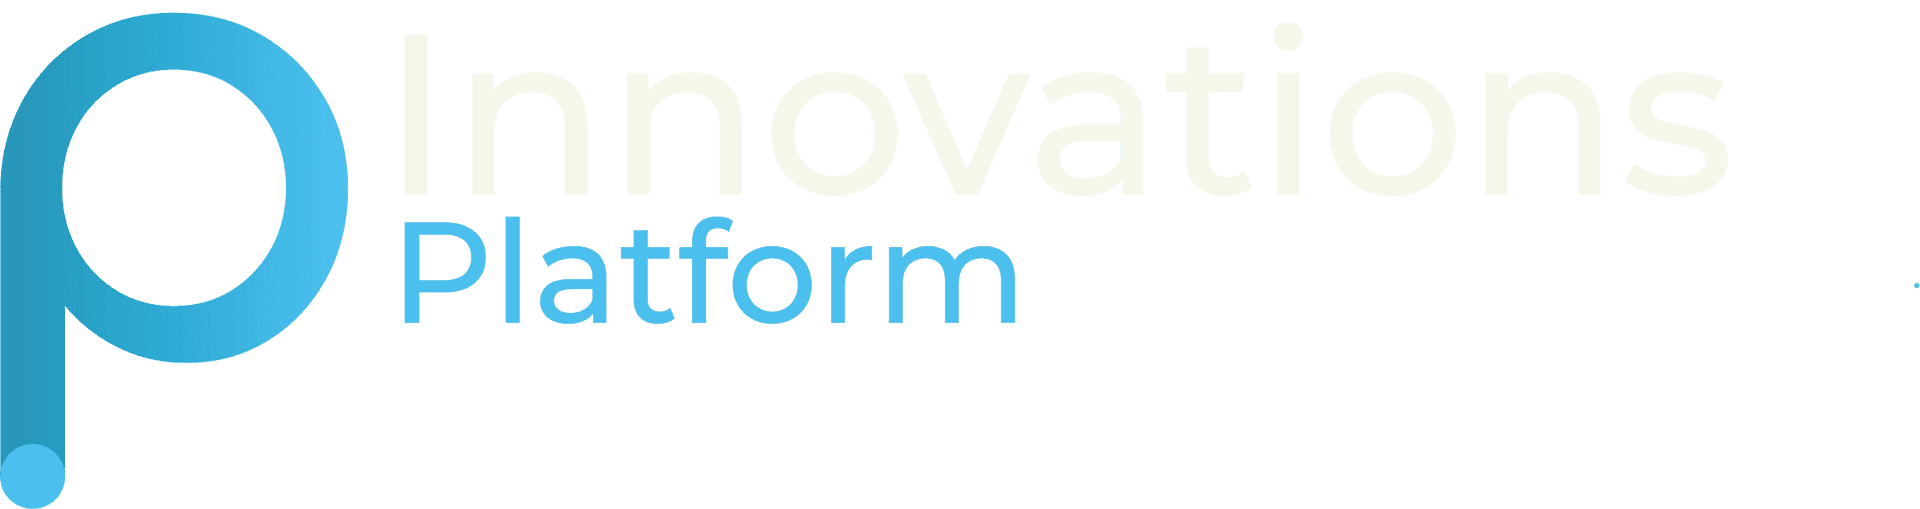 Innovations Platform logo